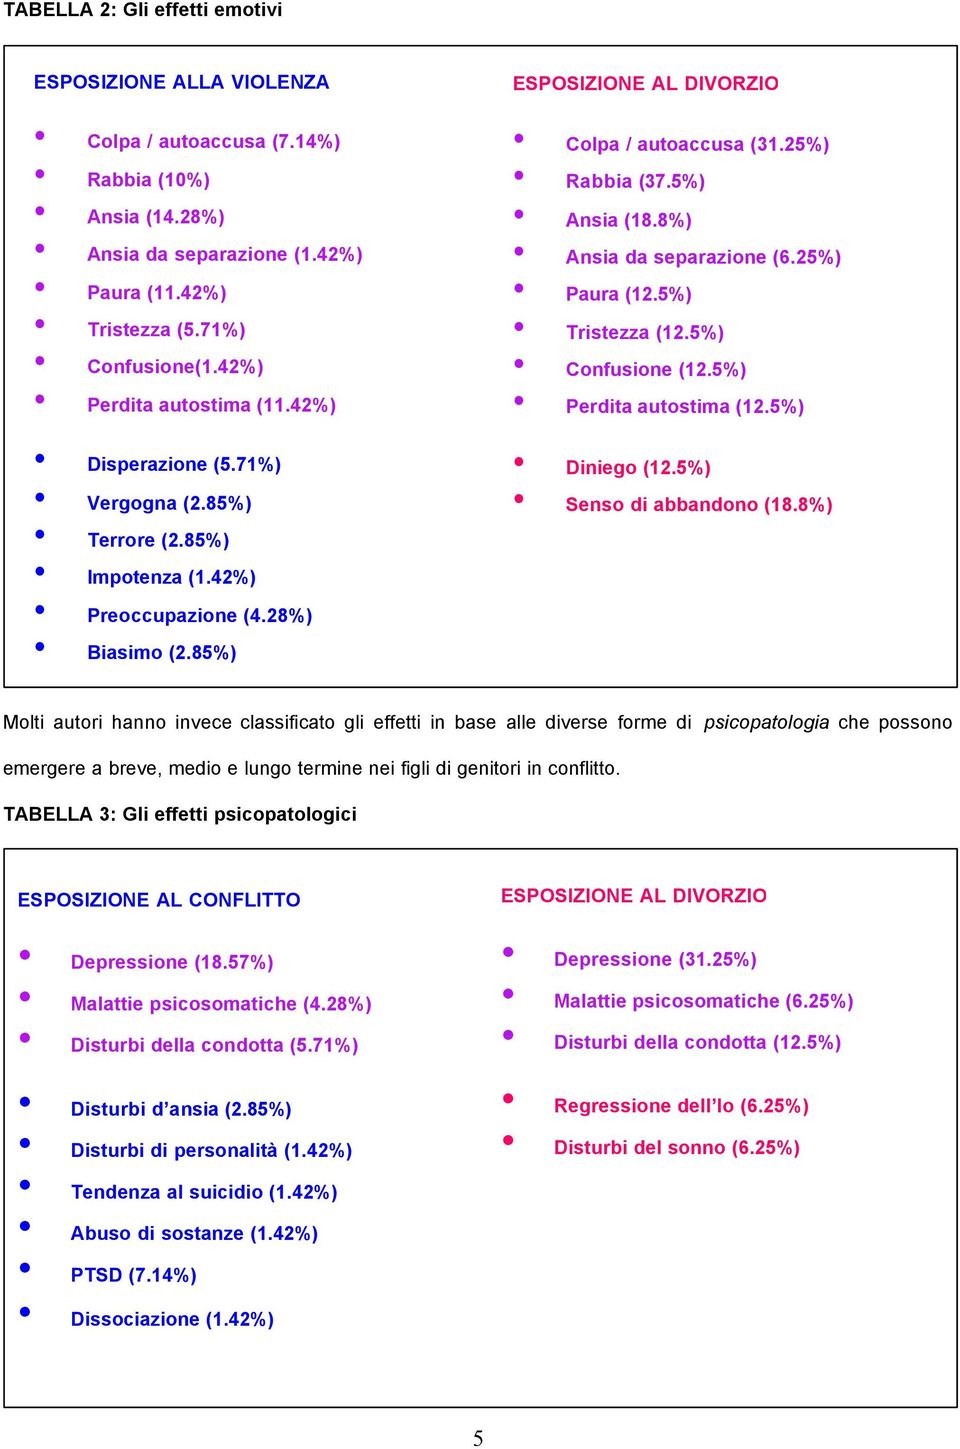 5%) Ansia (18.8%) Ansia da separazione (6.25%) Paura (12.5%) Tristezza (12.5%) Confusione (12.5%) Perdita autostima (12.5%) Diniego (12.5%) Senso di abbandono (18.